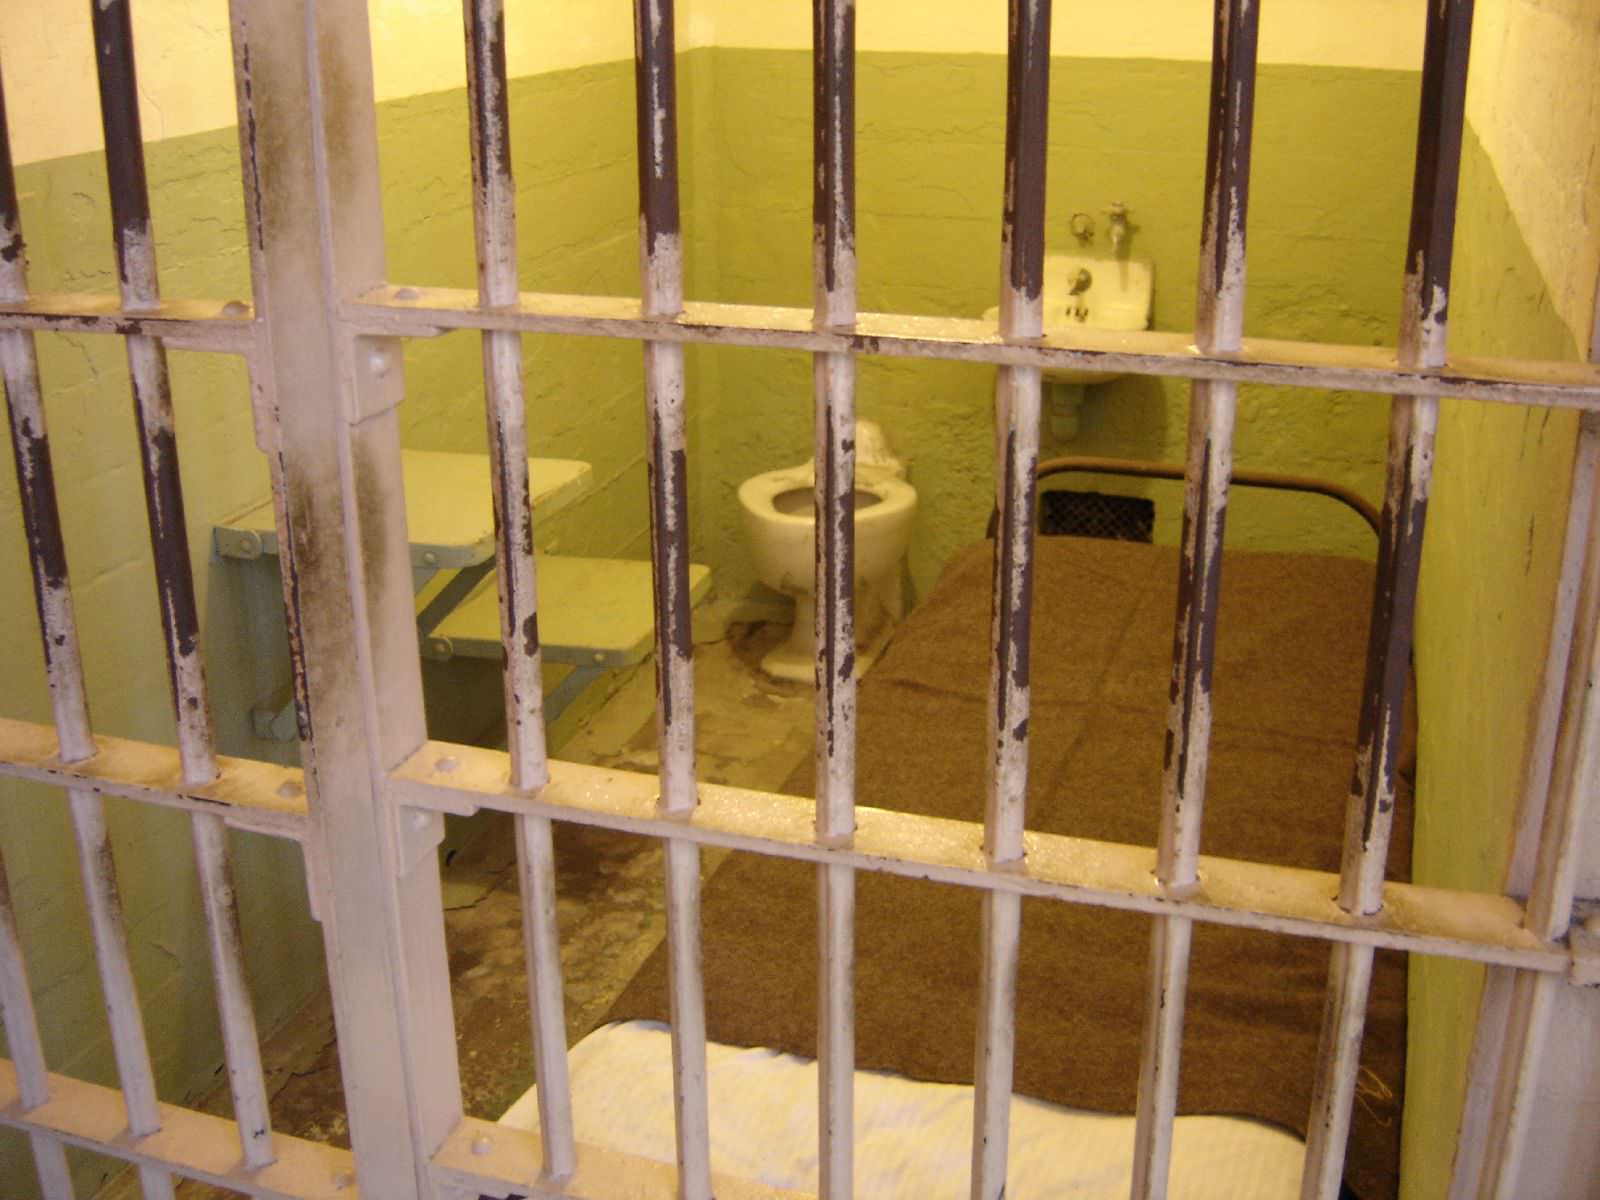 Messina: in carcere girano “pizzini”, indagati agenti penitenziari